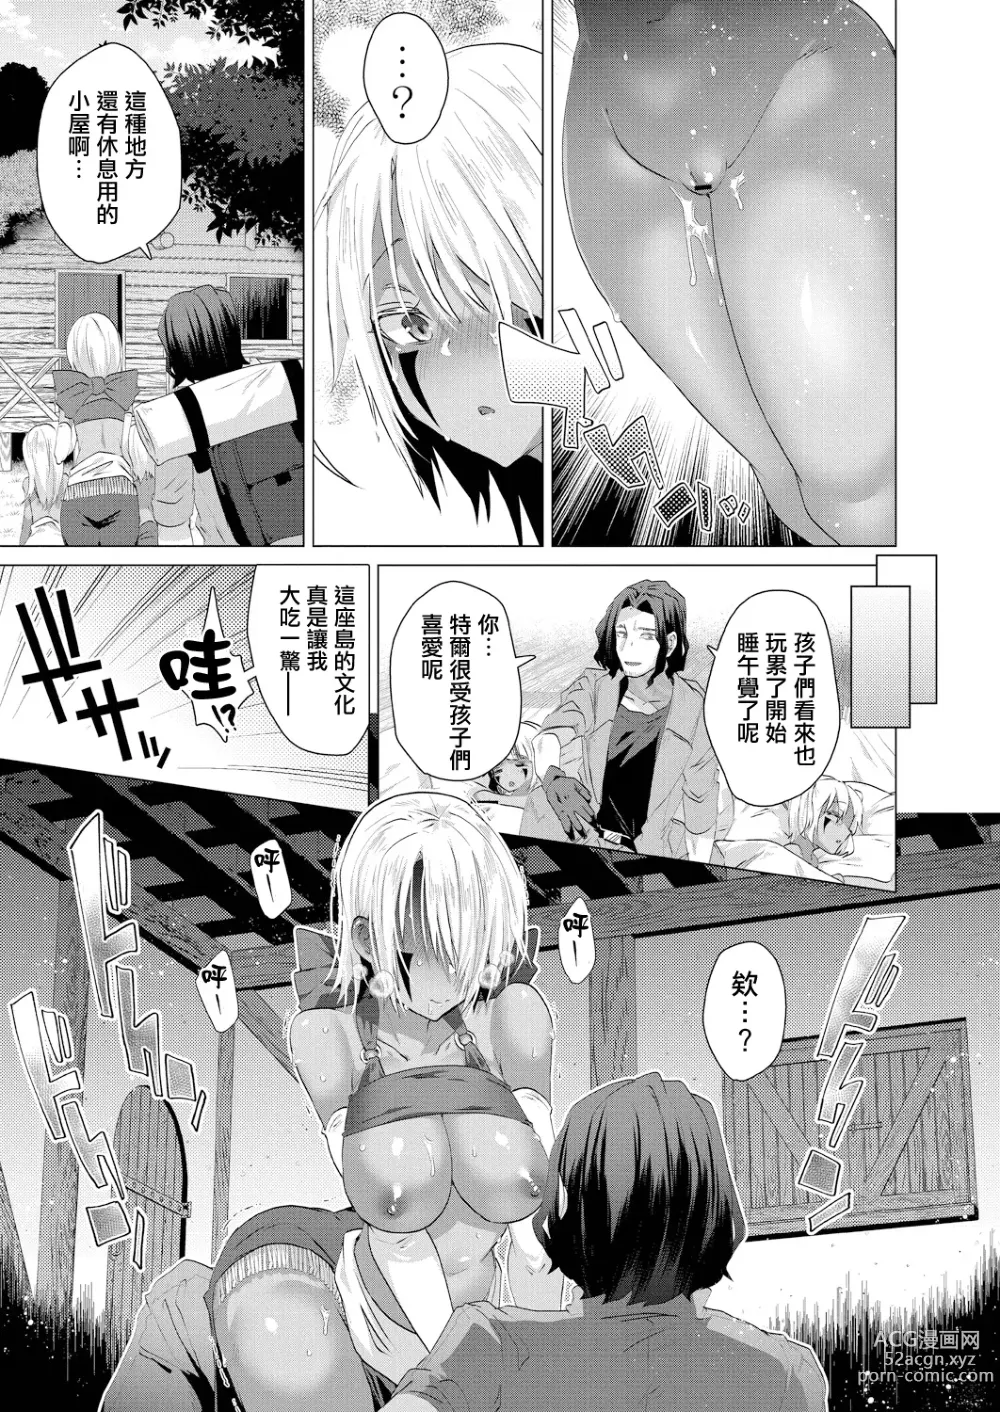 Page 7 of manga Kassyoku Musume no Harem Shima - Harem Island of Brown Girl Ch. 3